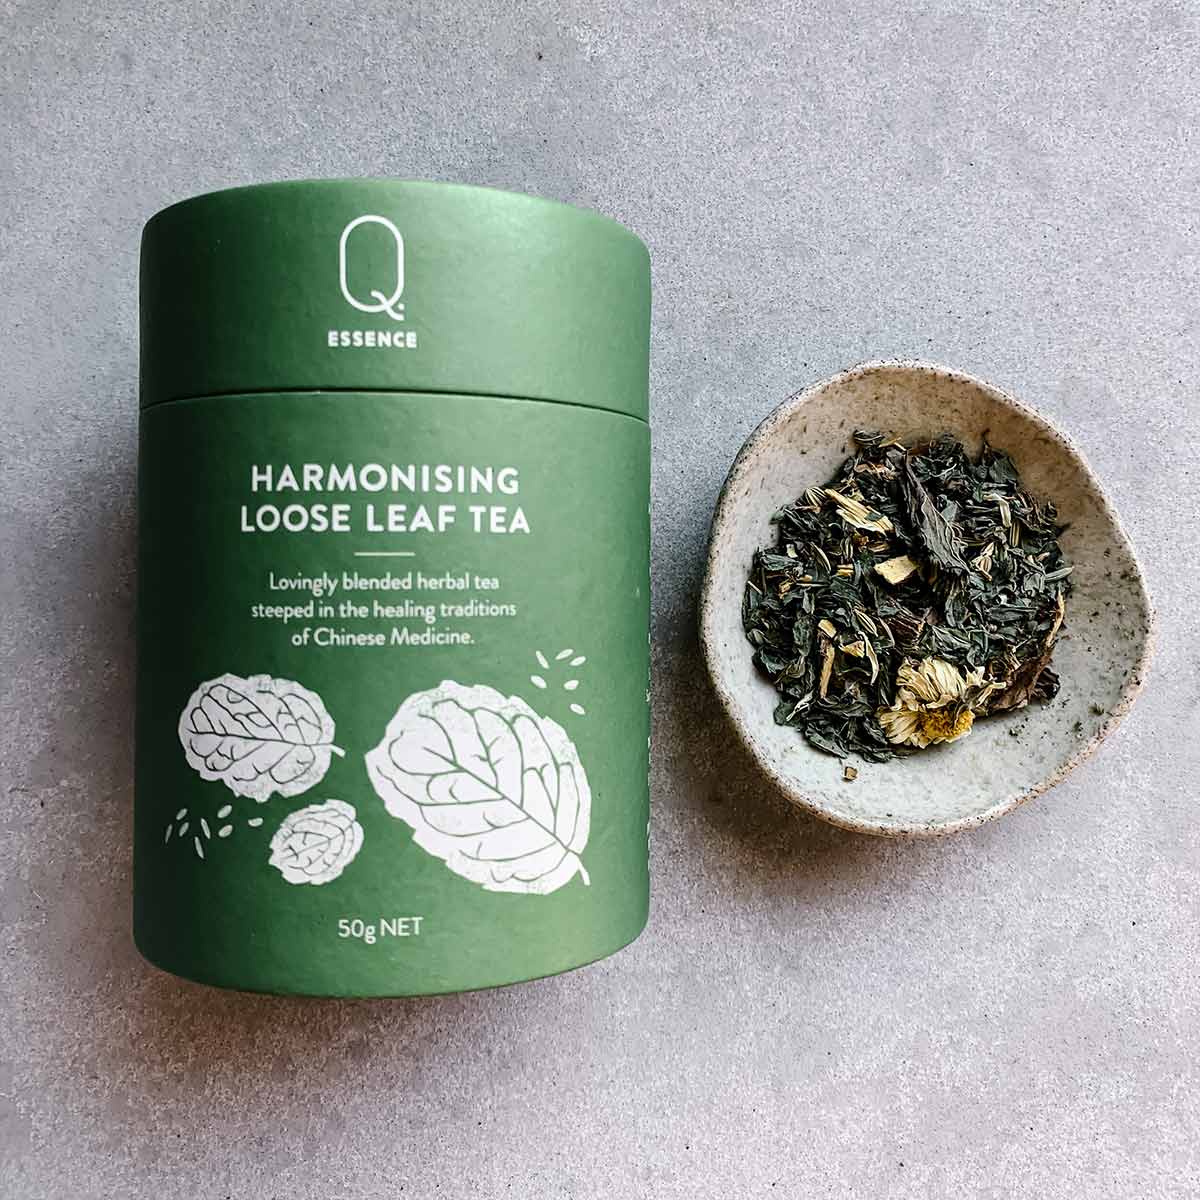 Q Essence Harmonising Loose Leaf Tea